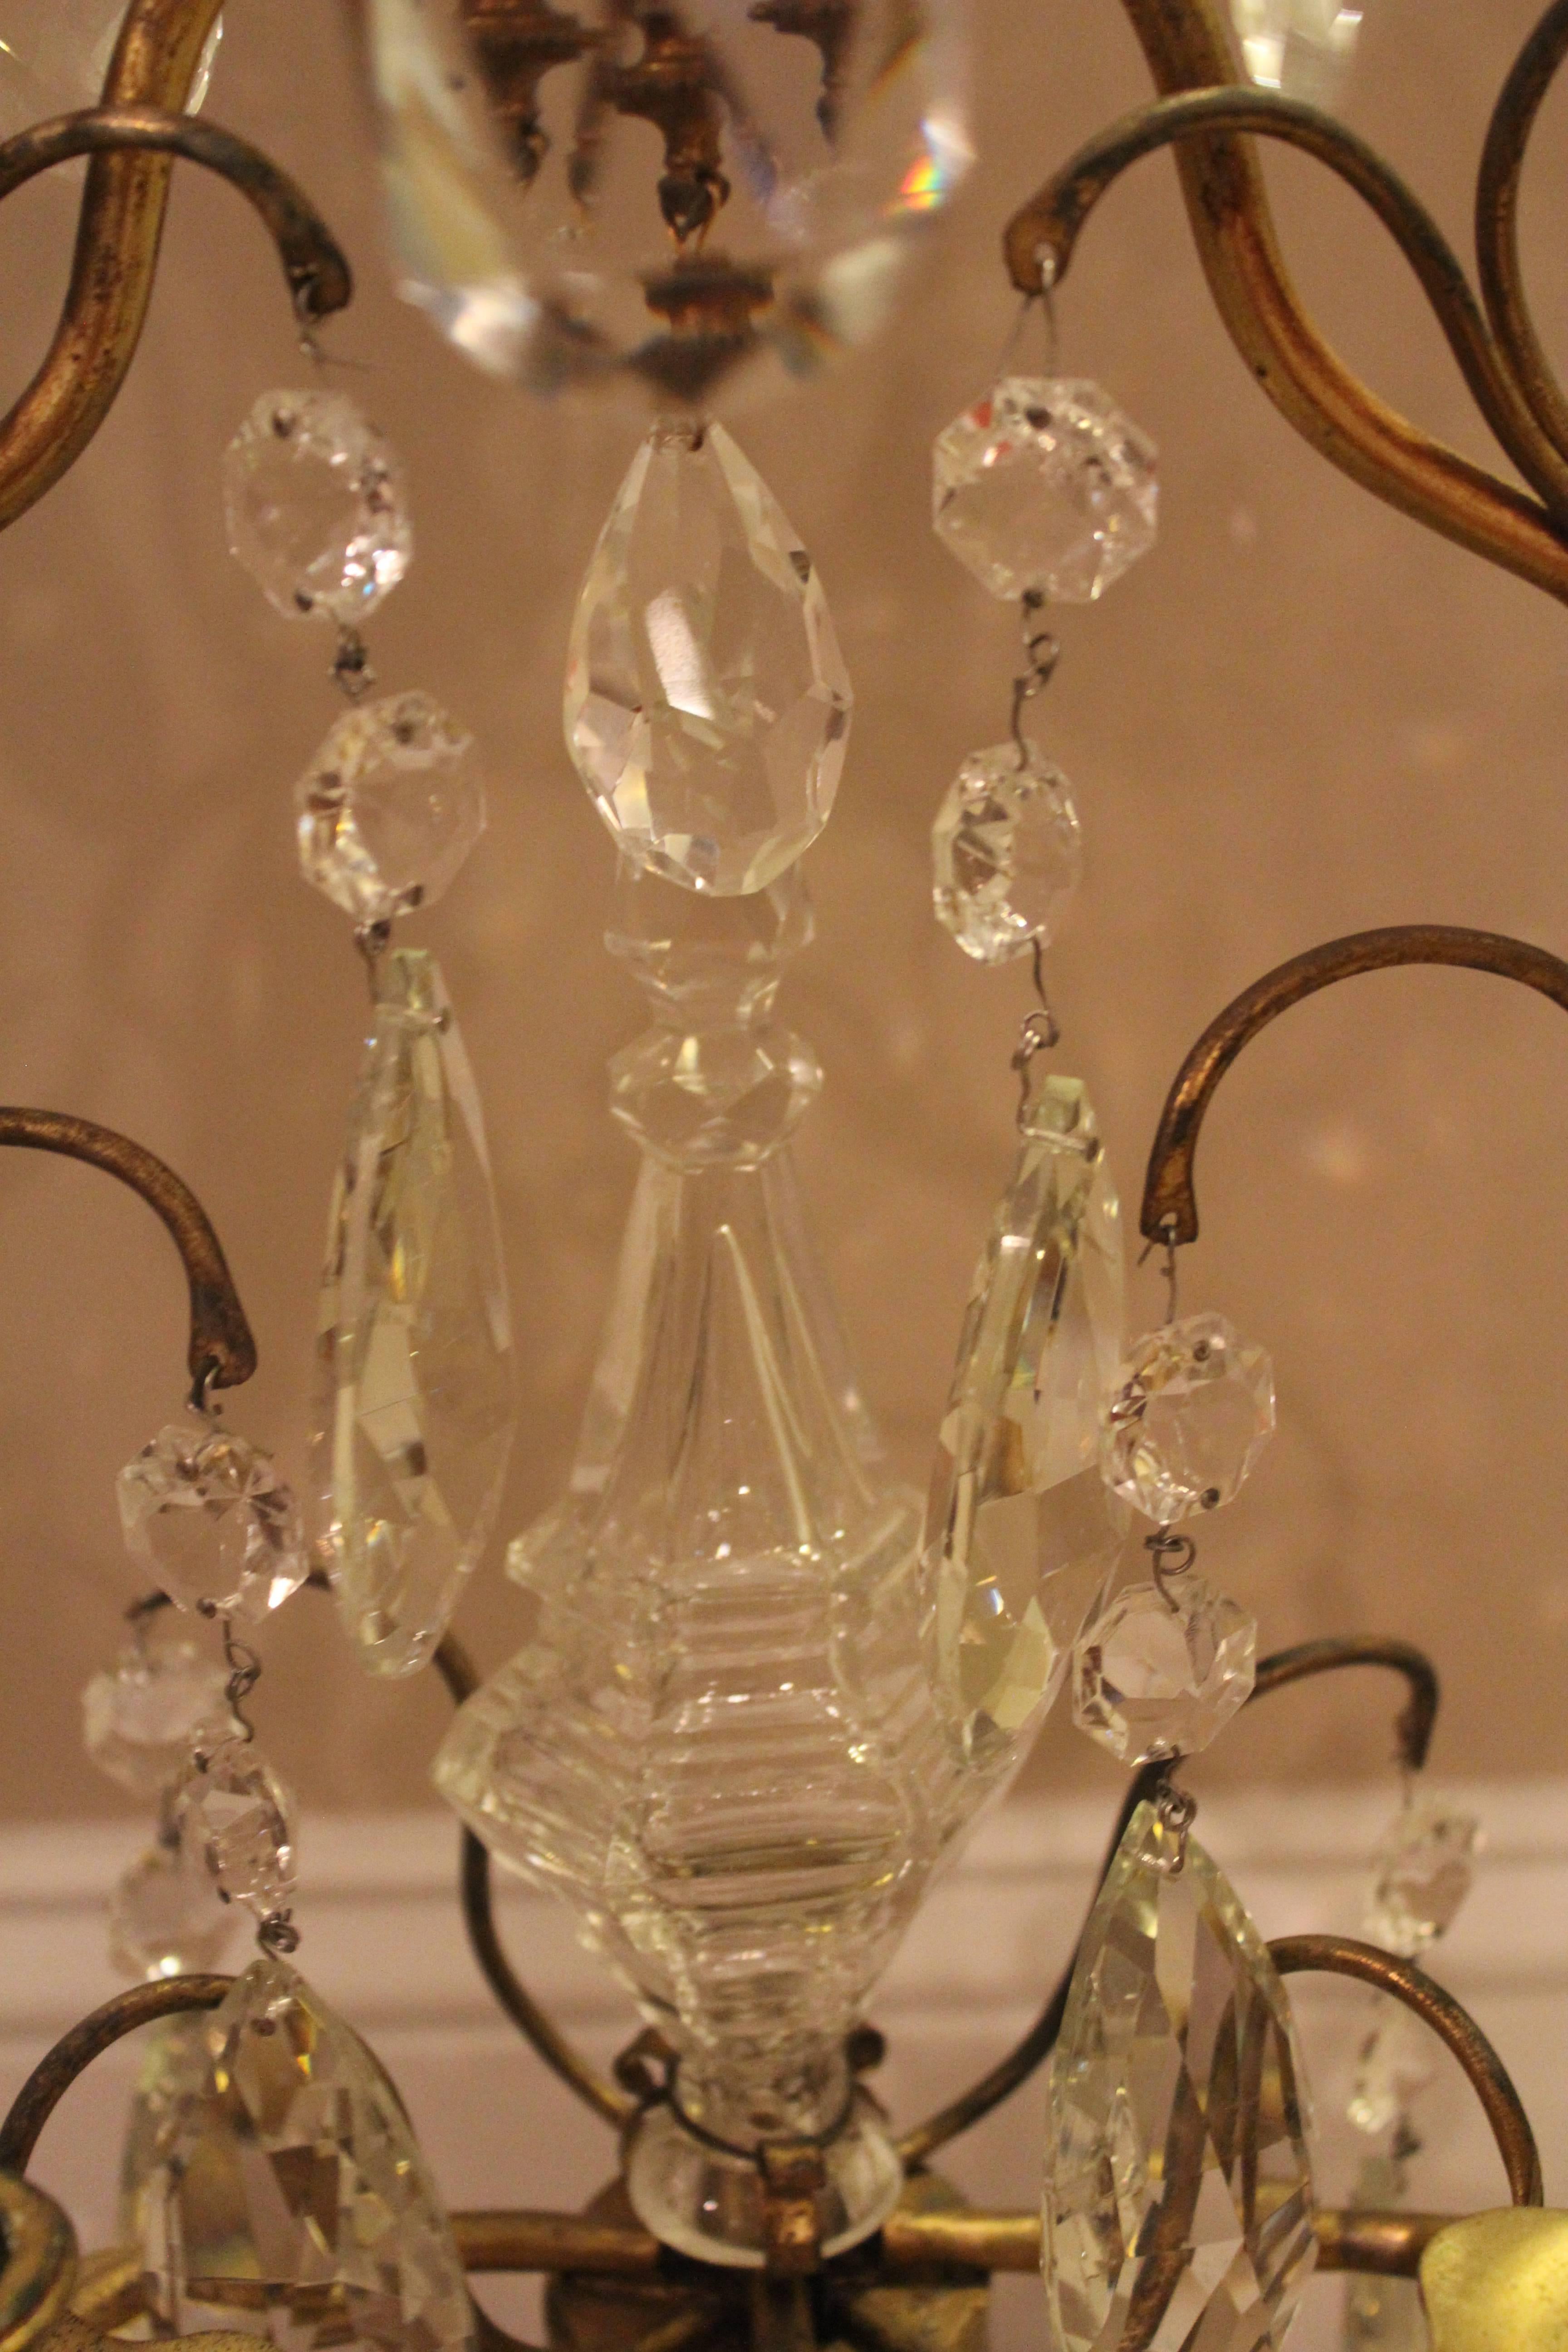 Kontinentaler fünfflammiger Kandelaber aus Bronze und geschliffenem Glas mit geschwungenen Armen, mehrteiligen Glastropfen und blumenförmigen Kerzenschalen.